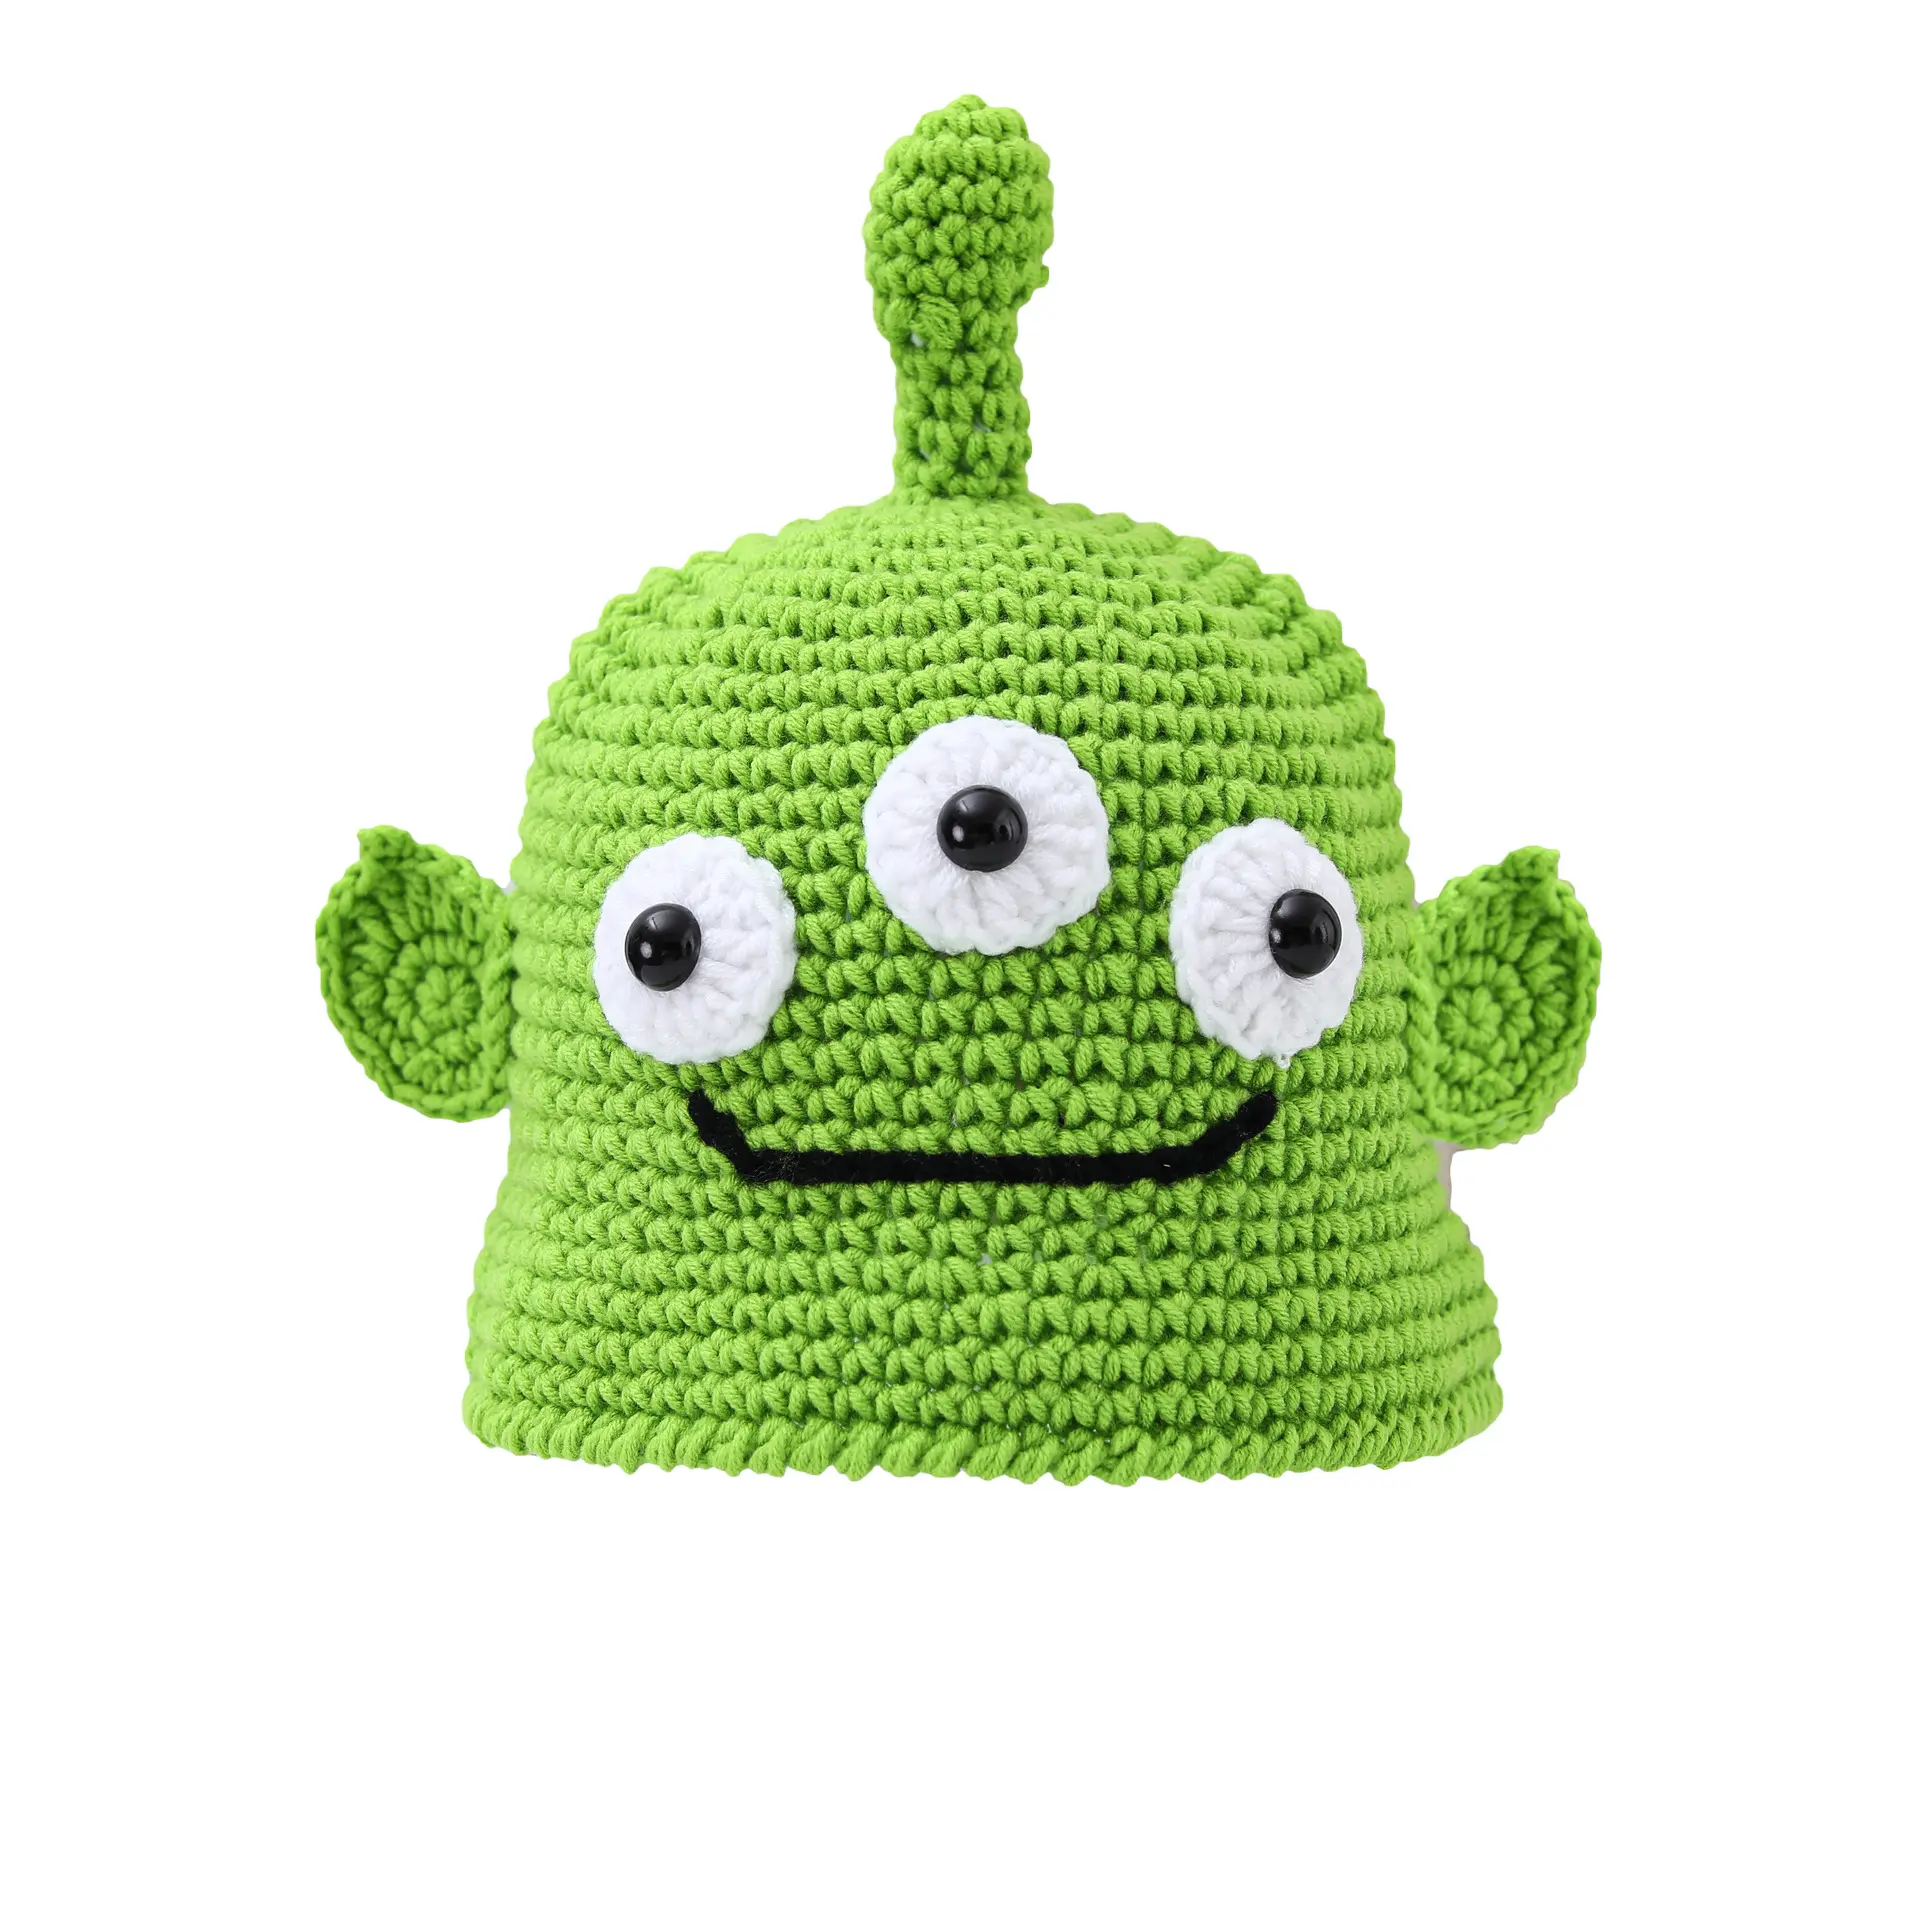 Детская вязаная крючком шляпа с трехглазным персонажем инопланетянин зеленого размера на заказ